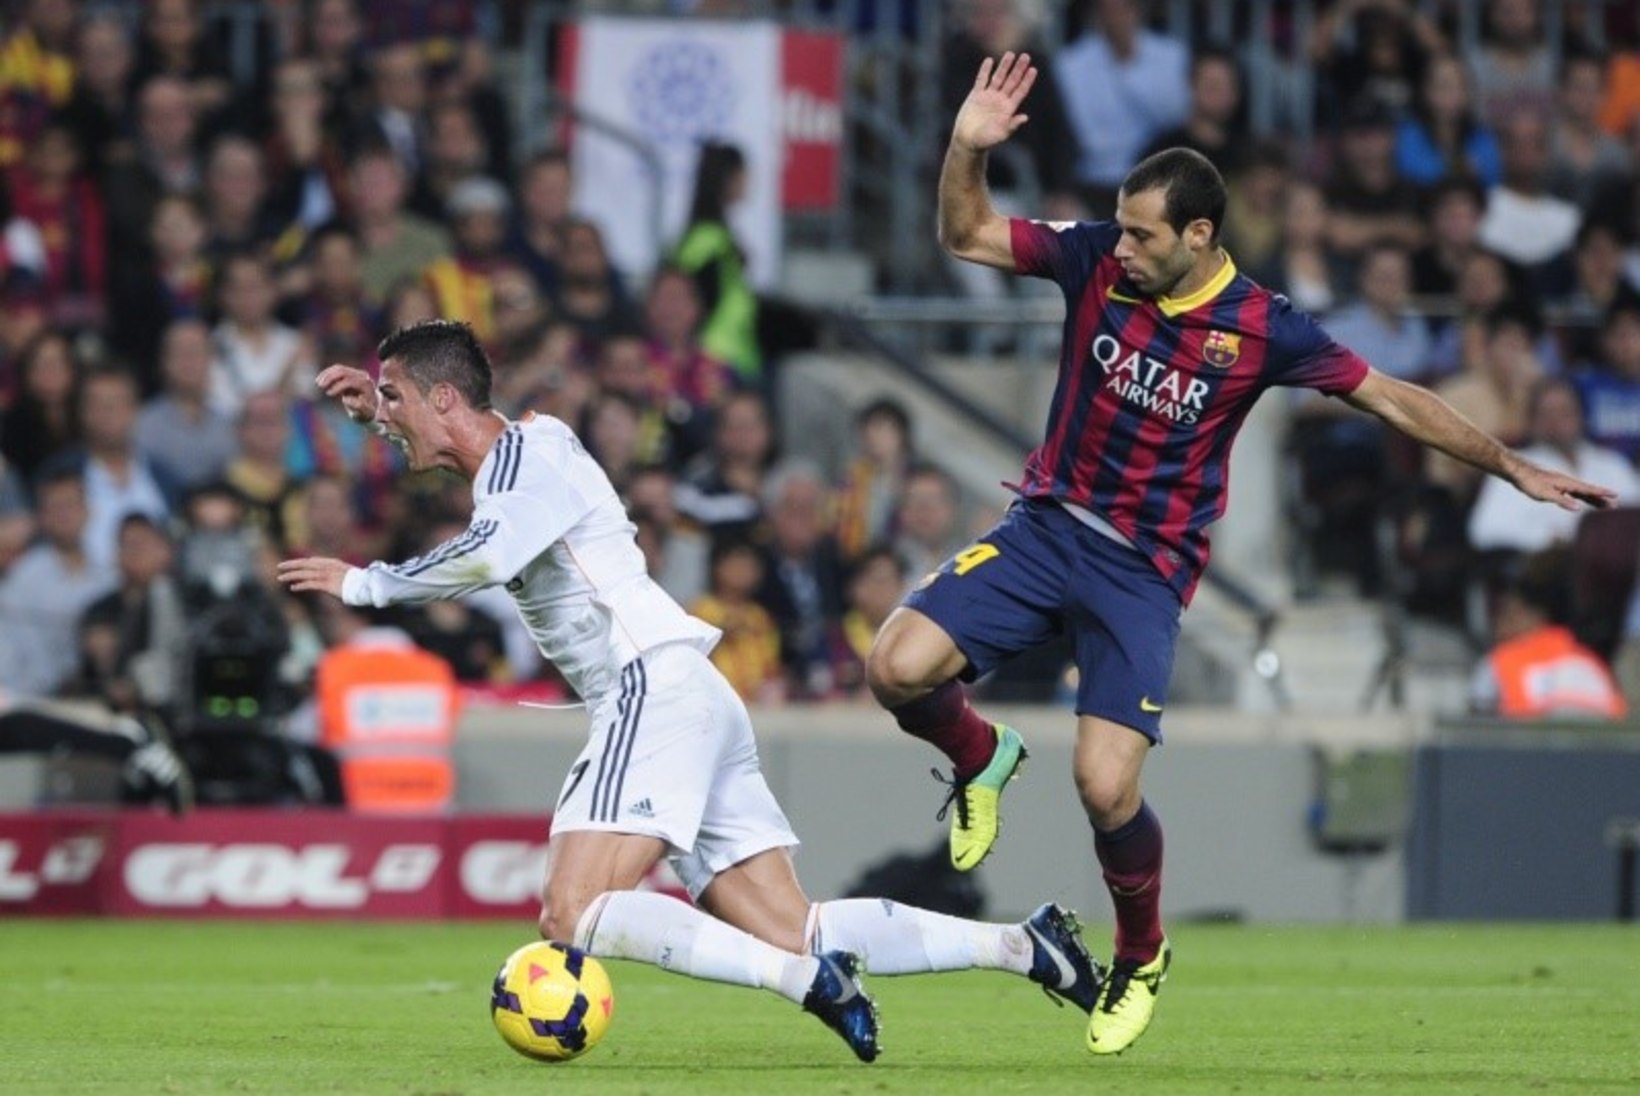 El Clasico järelkajad: kas Realile jäeti andmata kindel penalti?